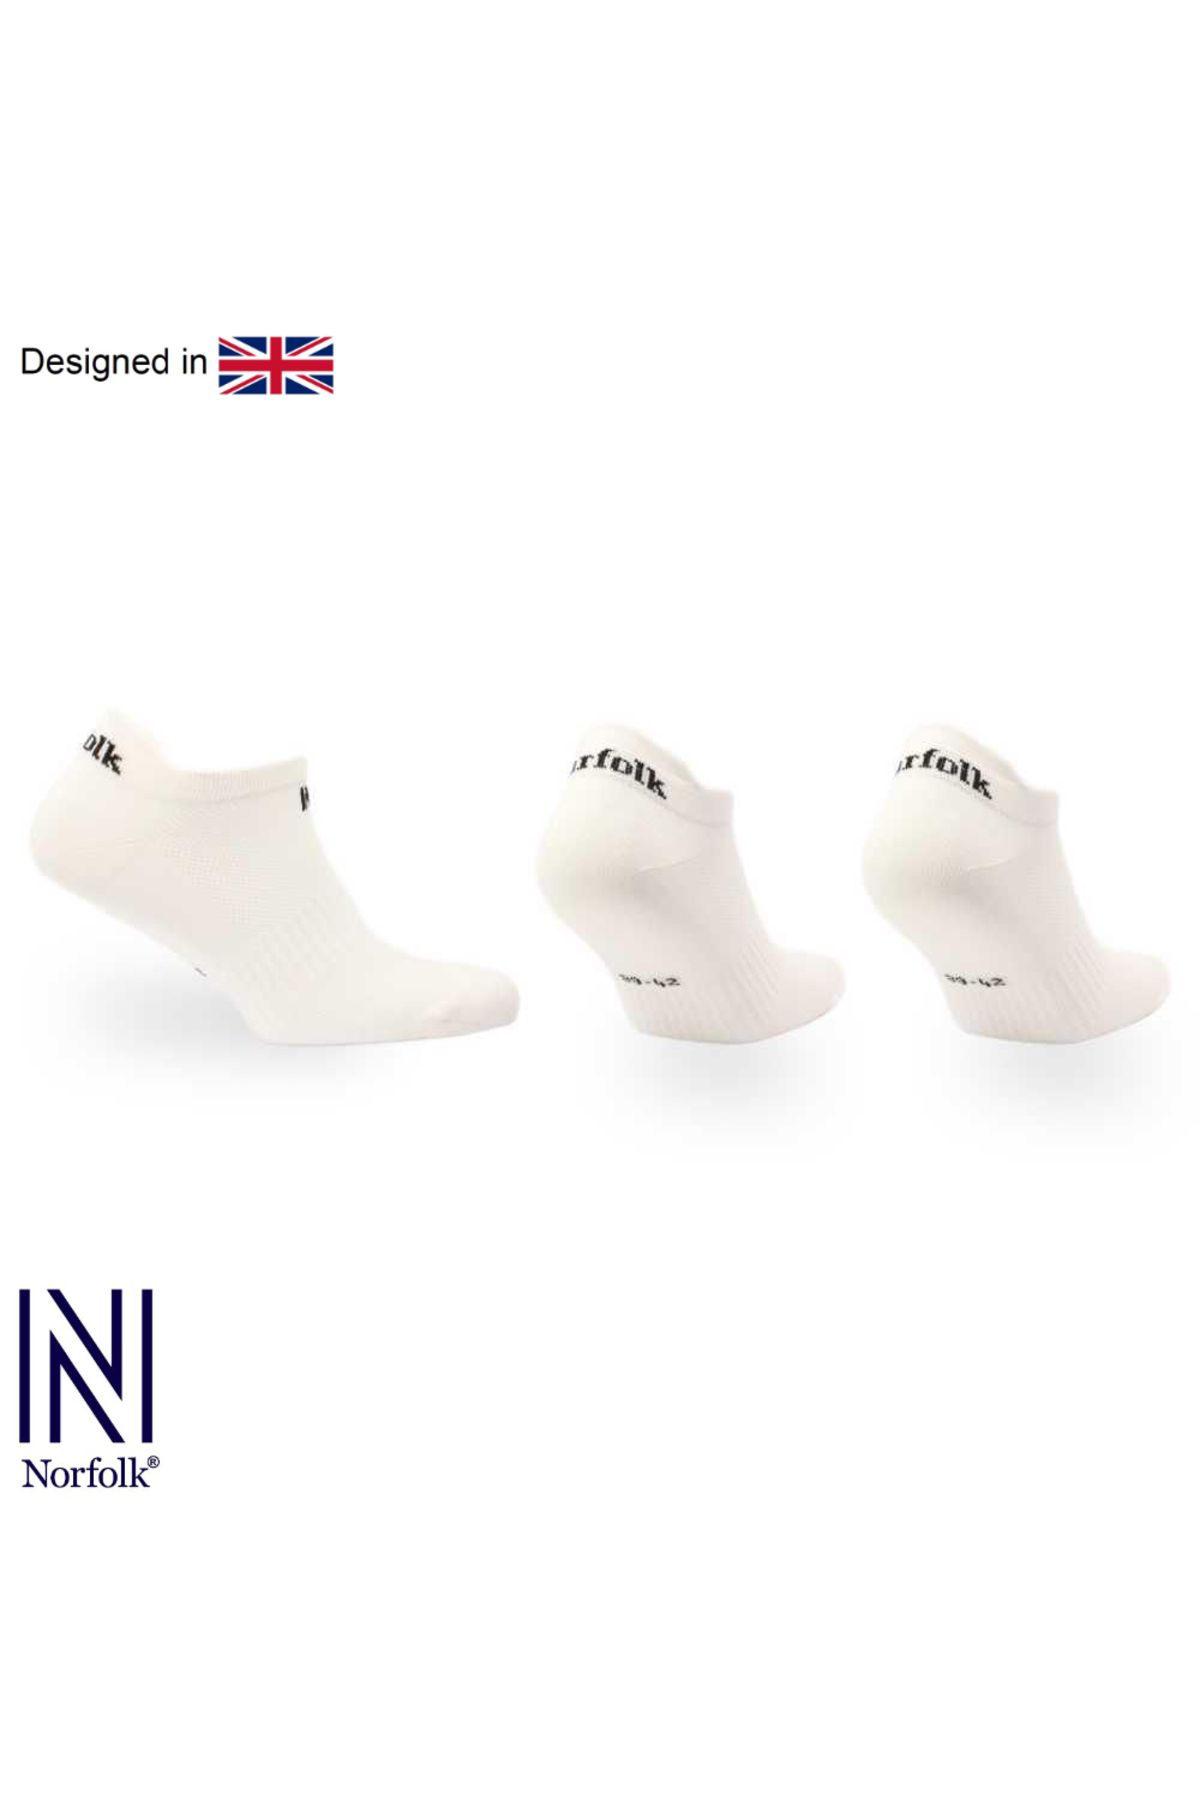 Norfolk Beyaz Izzy Üçlü Paket Multisport Çorap Norf-ızzy-3pk